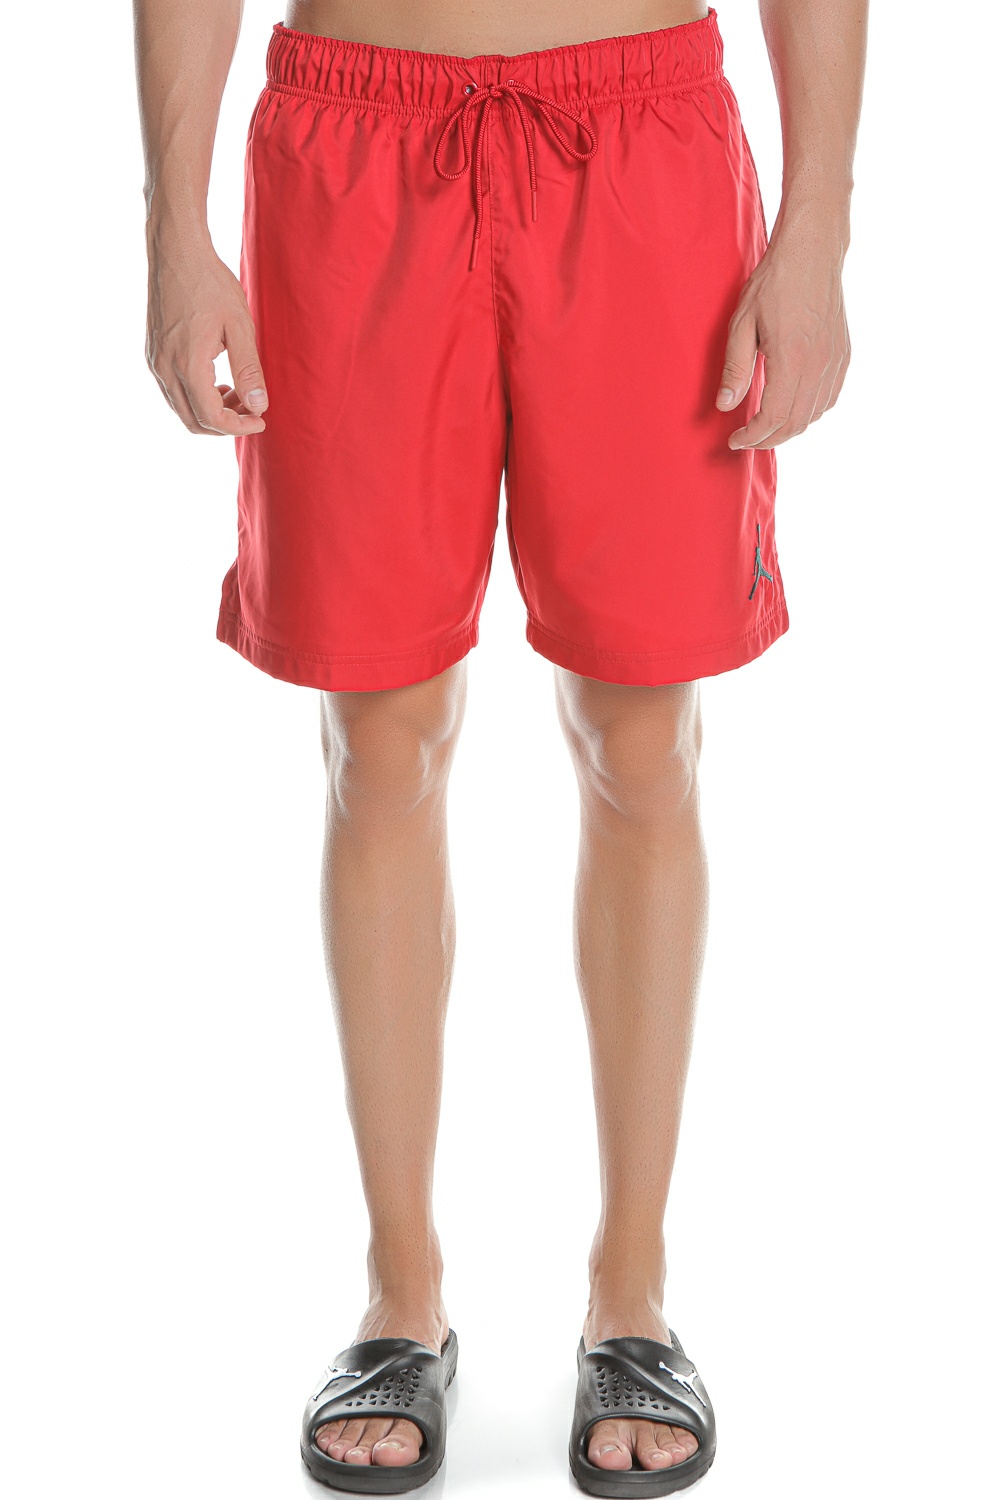 Ανδρικά/Ρούχα/Σορτς-Βερμούδες/Αθλητικά NIKE - Ανδρική βερμούδα μαγιό NIKE M J JUMPMAN POOLSIDE SHORT κόκκινο